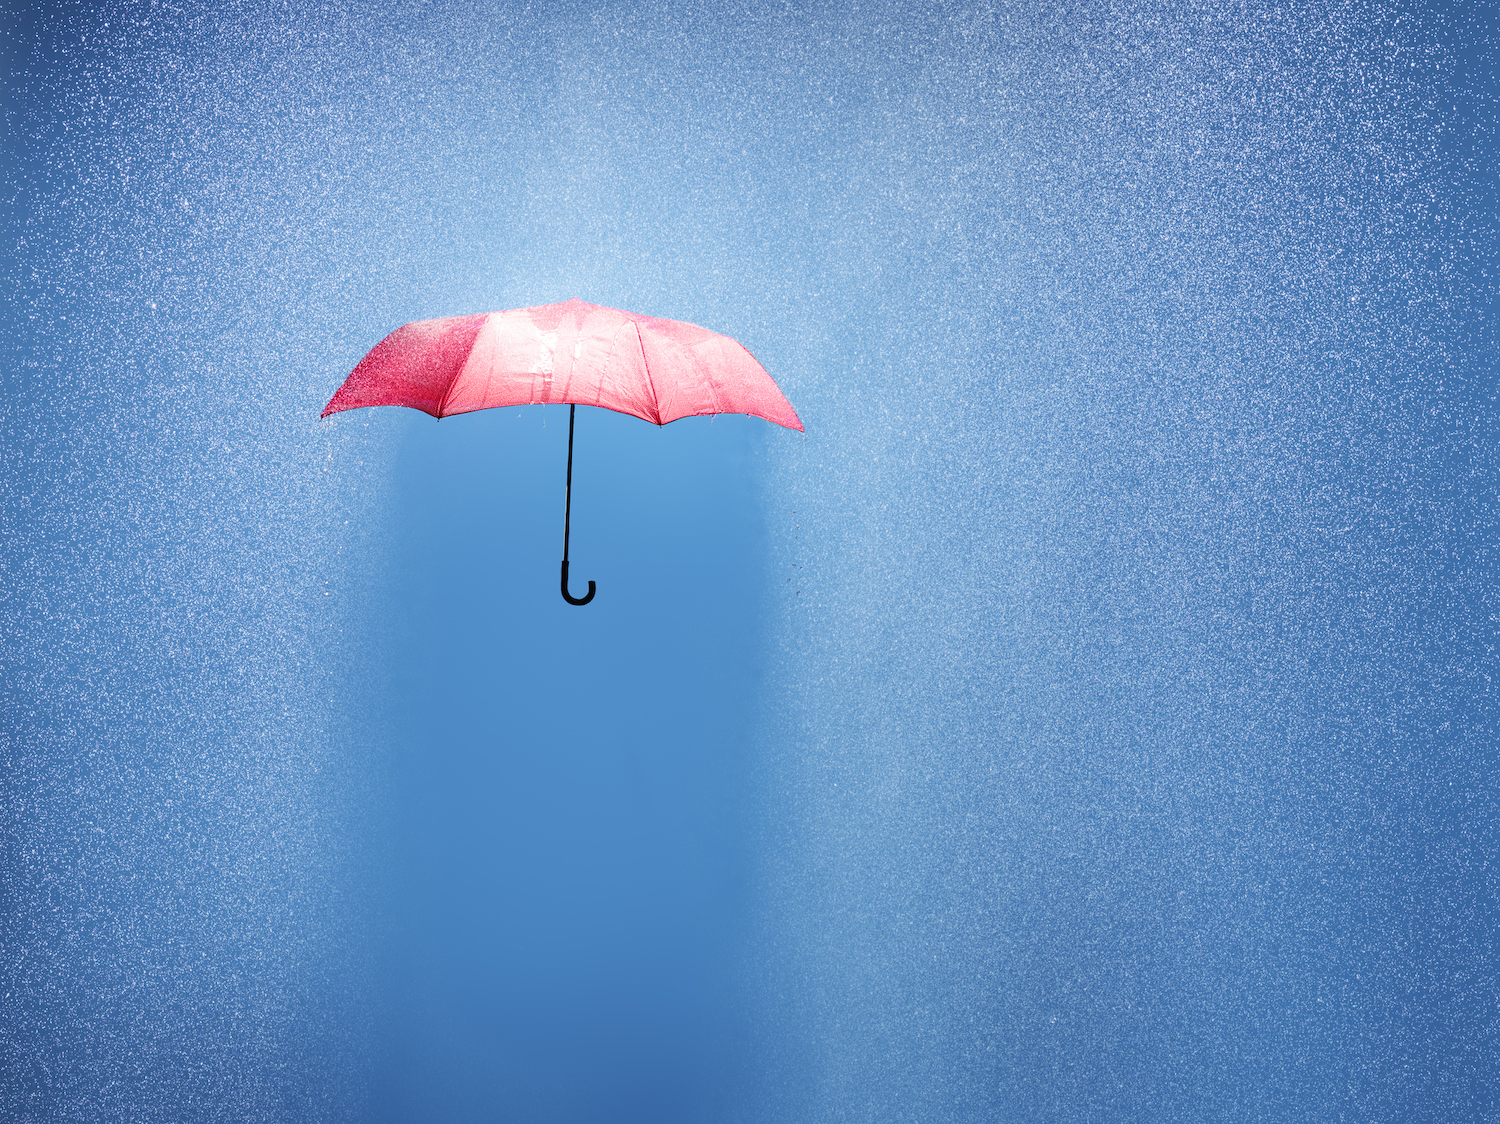 Parapluie rose dans une douche à effet pluie, conceptuellement photographié